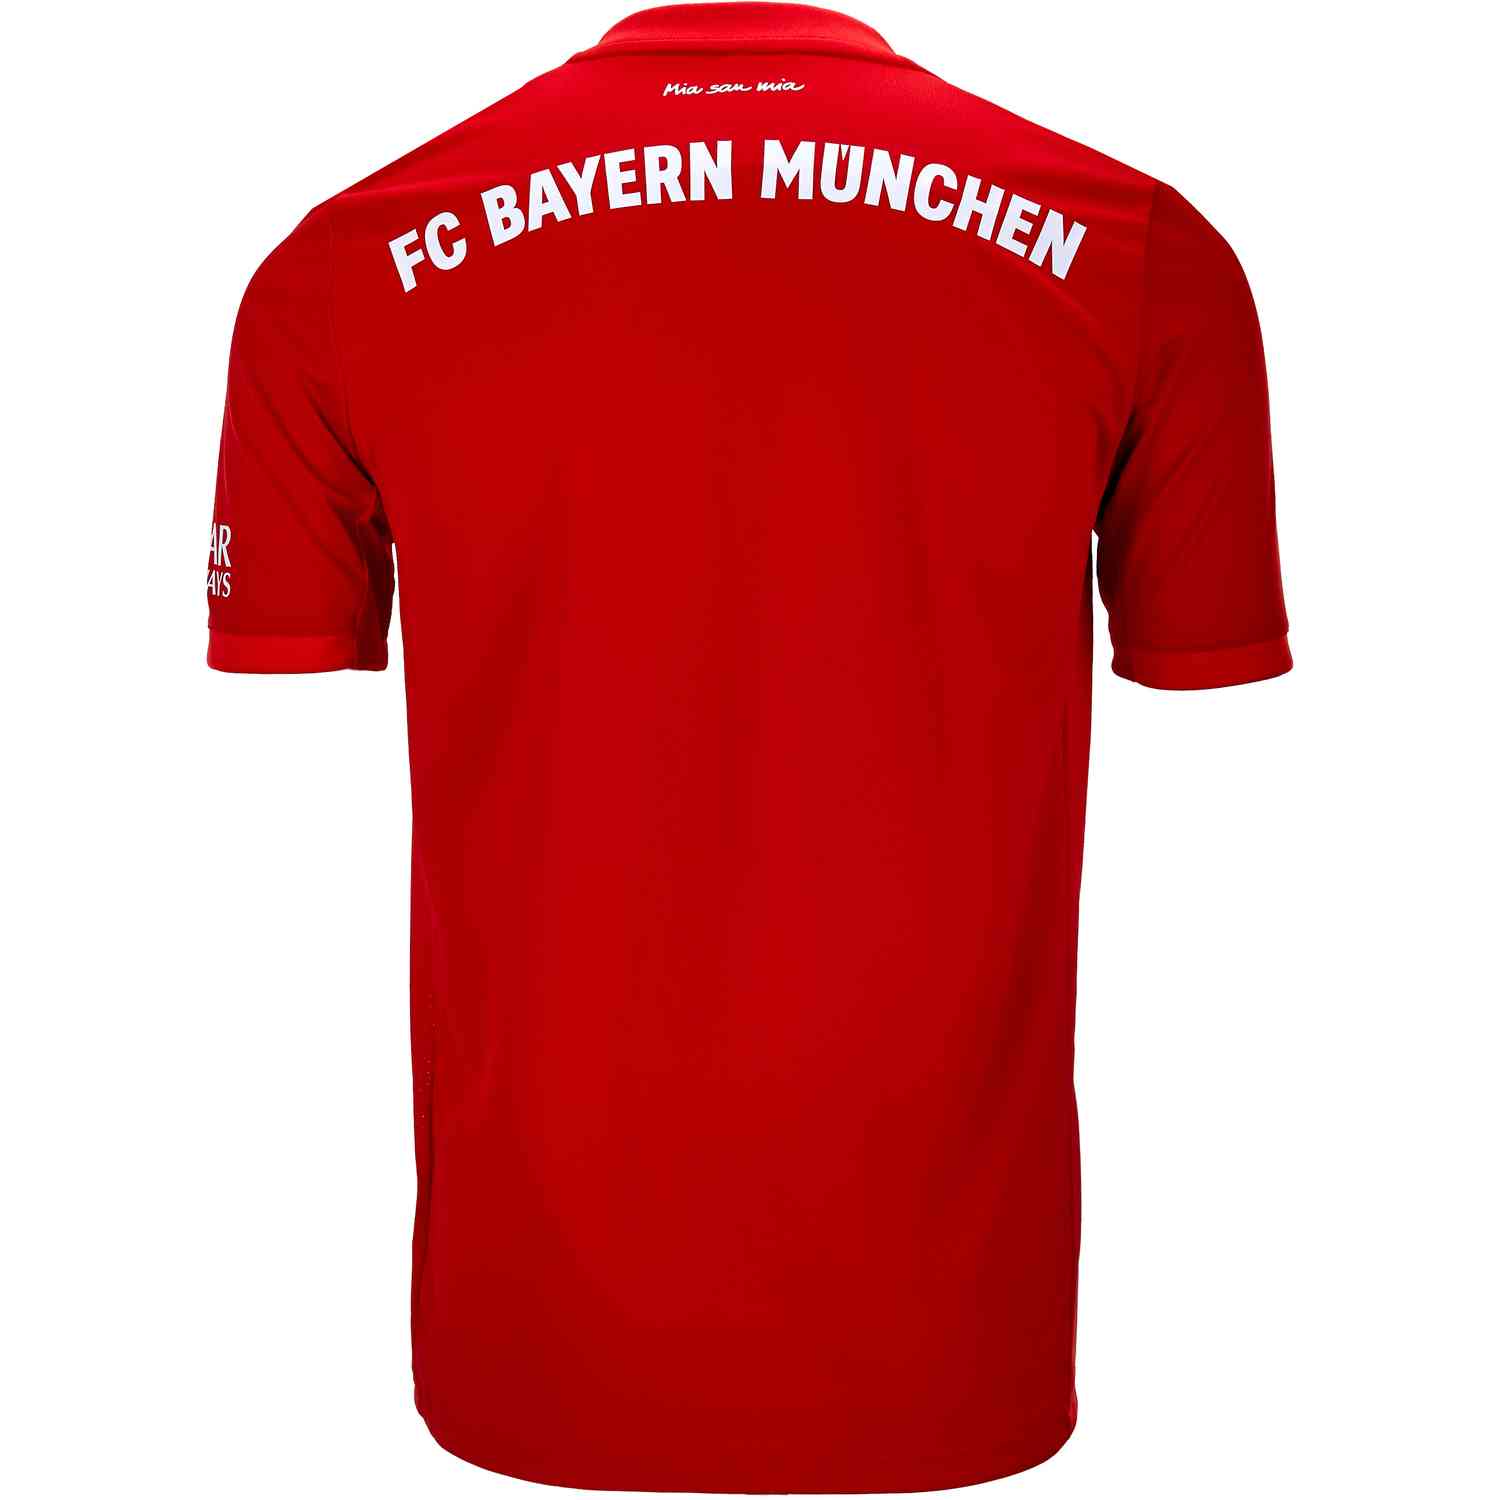 2019/20 Kids adidas Bayern Munich Home Jersey - SoccerPro